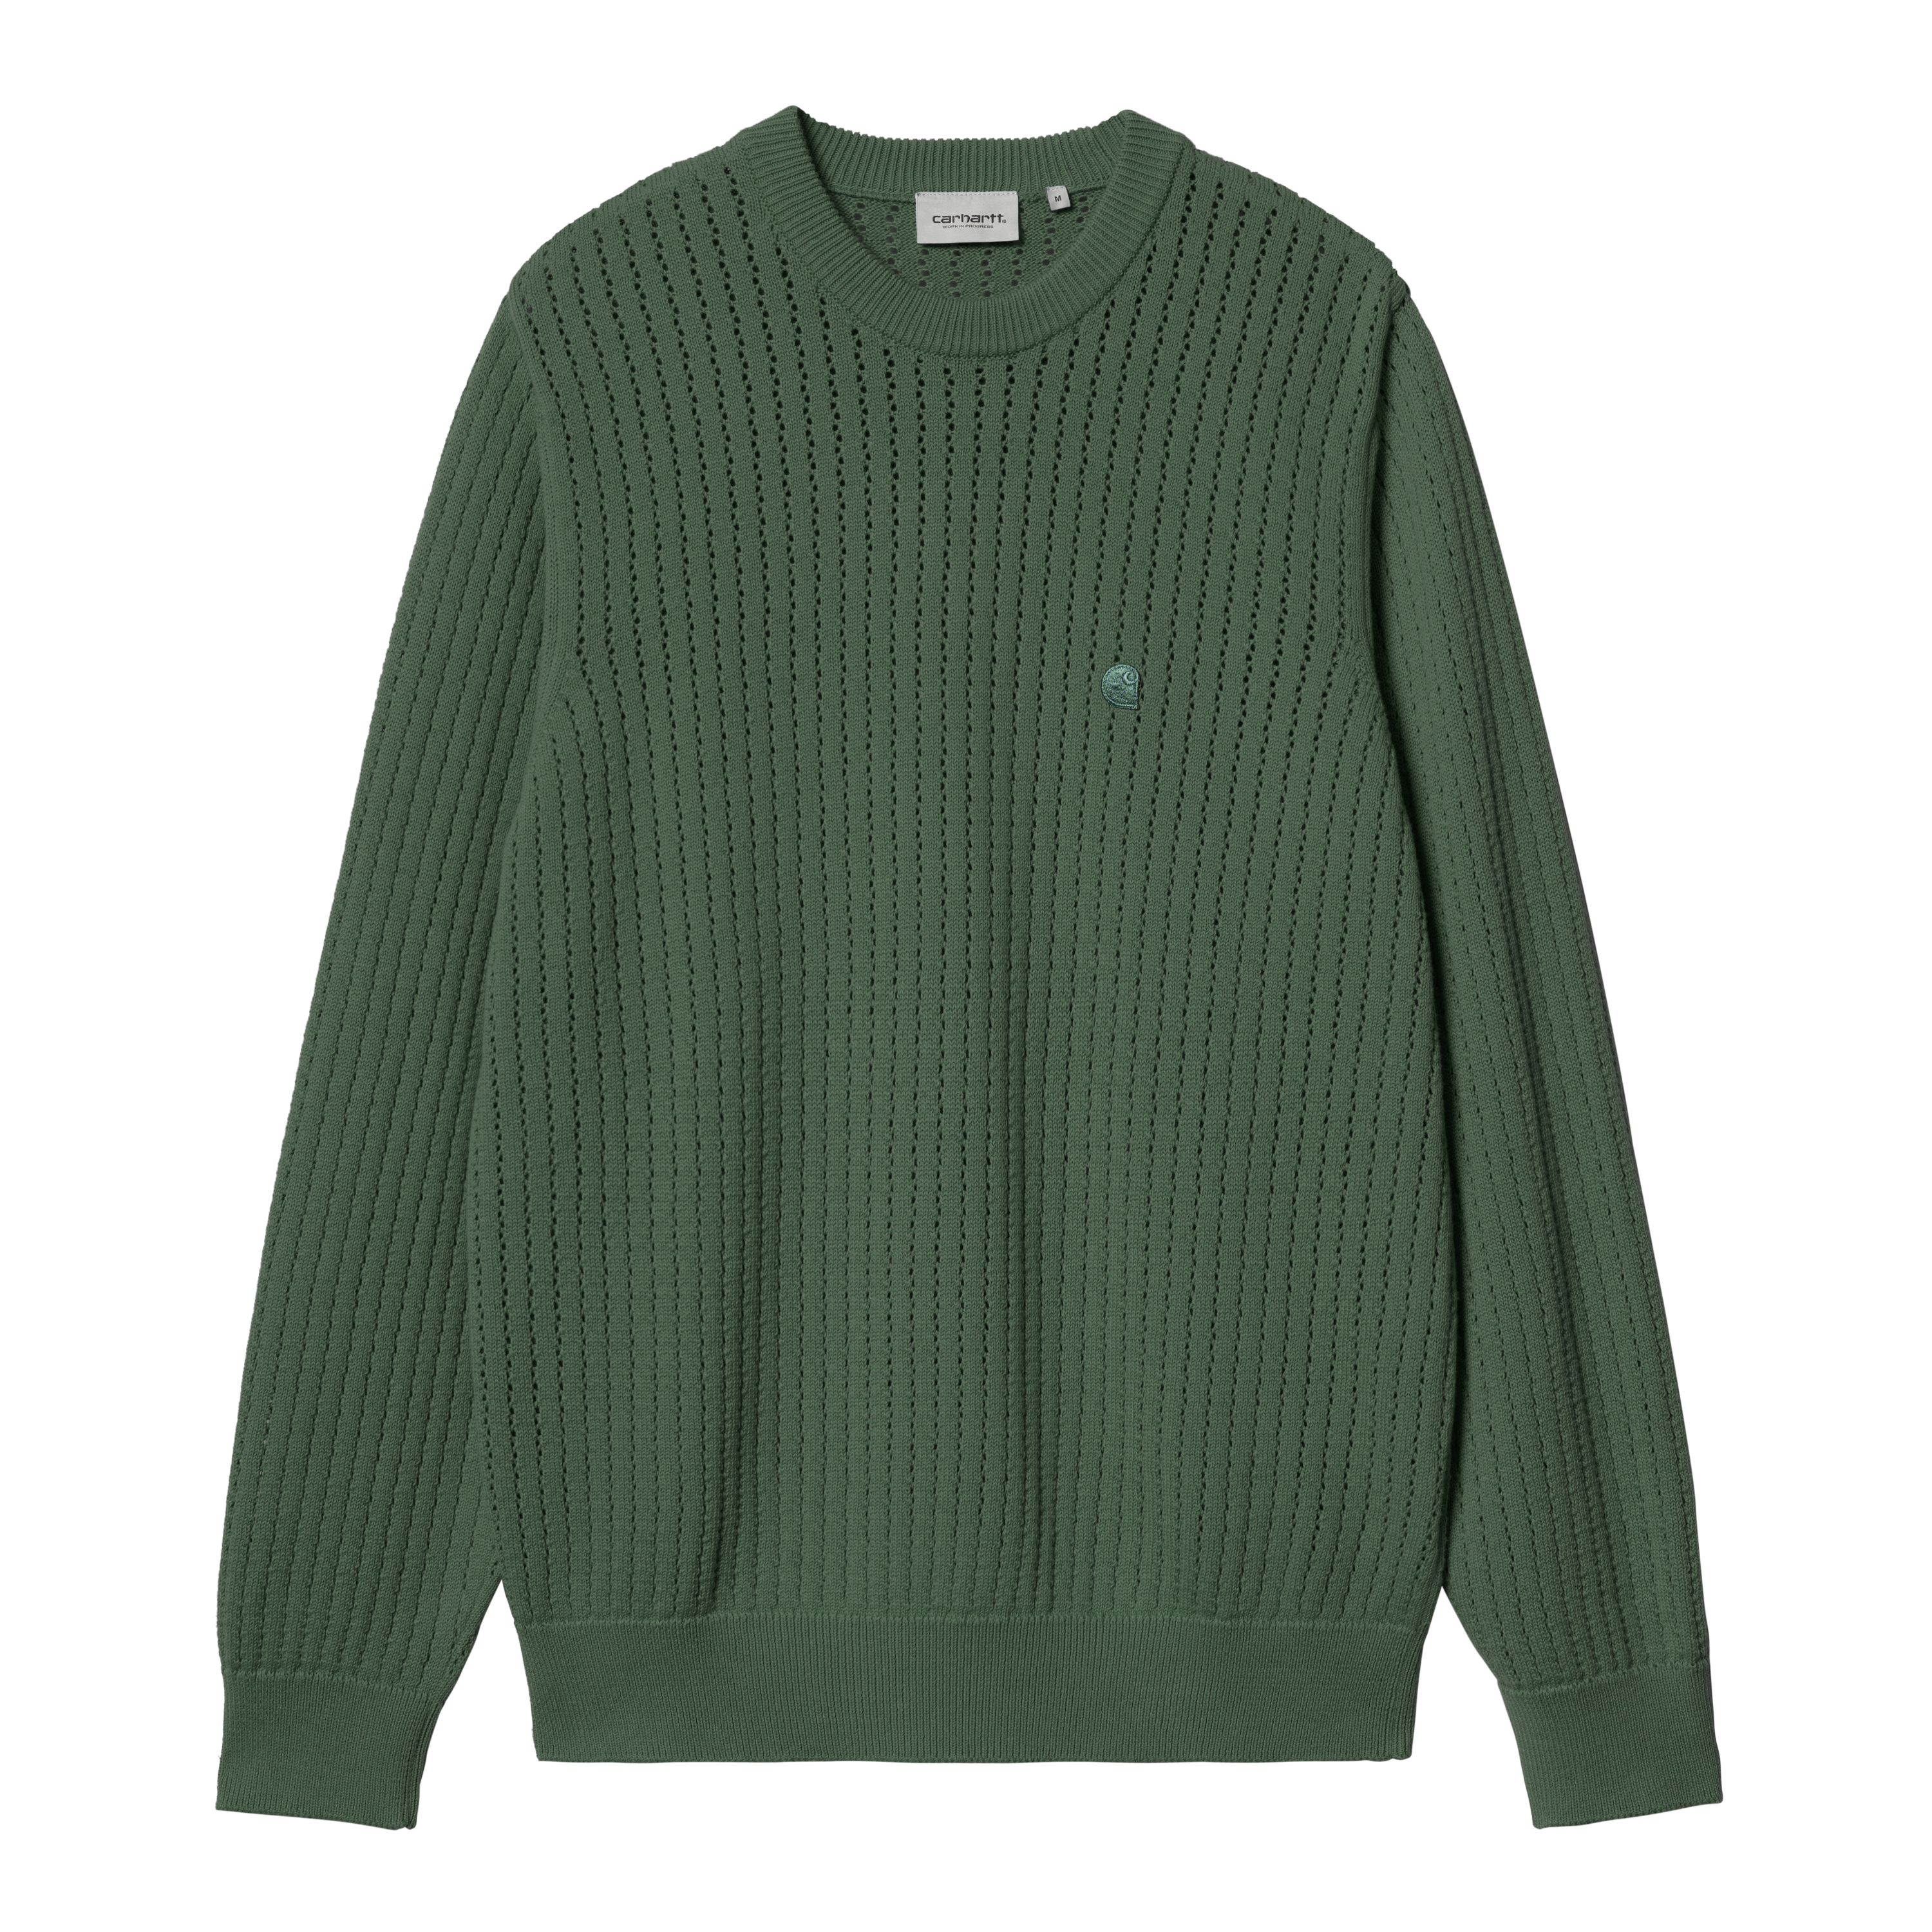 Carhartt WIP Calen Sweater in Verde